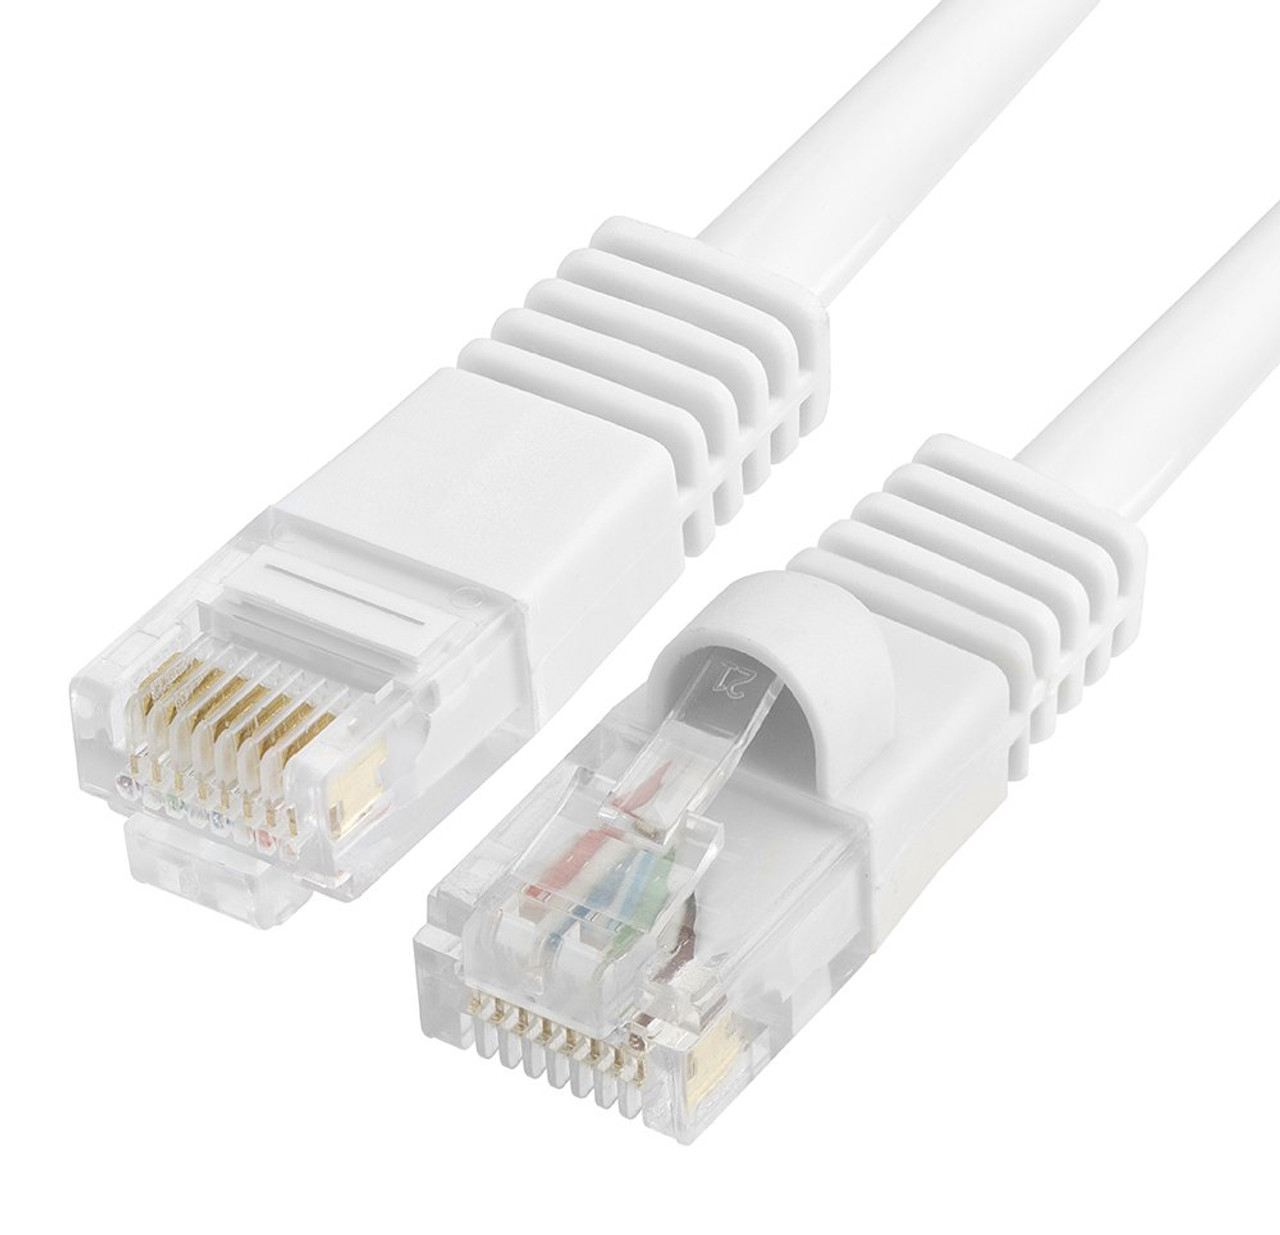 20pcs Ez Rj45 Connector Cat6 Rj45 Ethernet Cable Plug 8p8c Cat6 Network Terminal Ebay